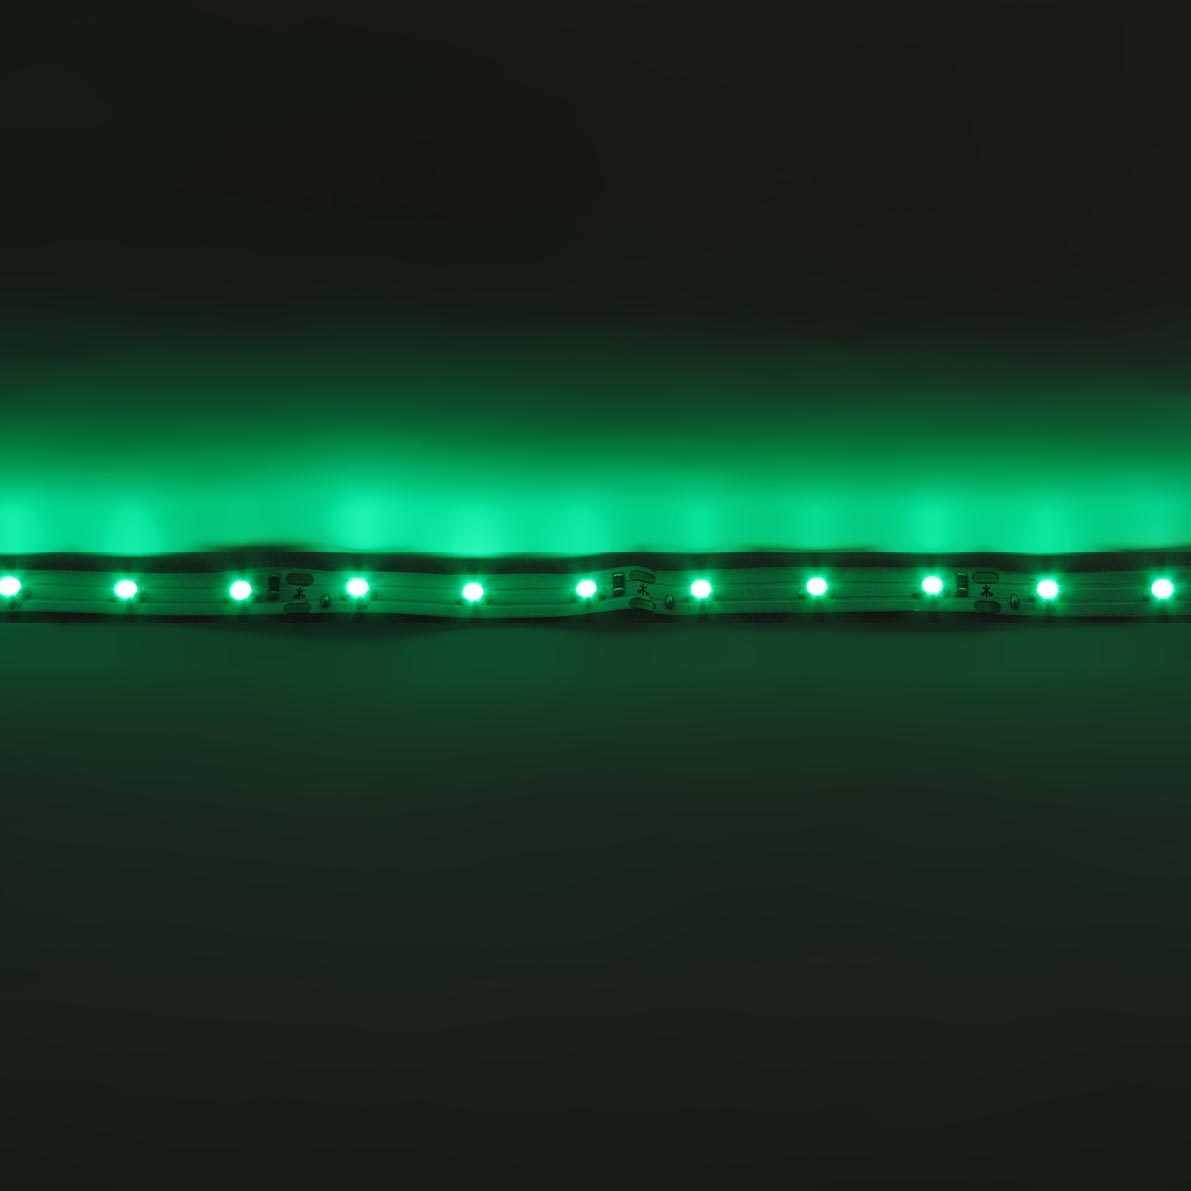 светодиодная лента standart class, 3528, 60led/m, green, 12v, ip33, артикул 52707